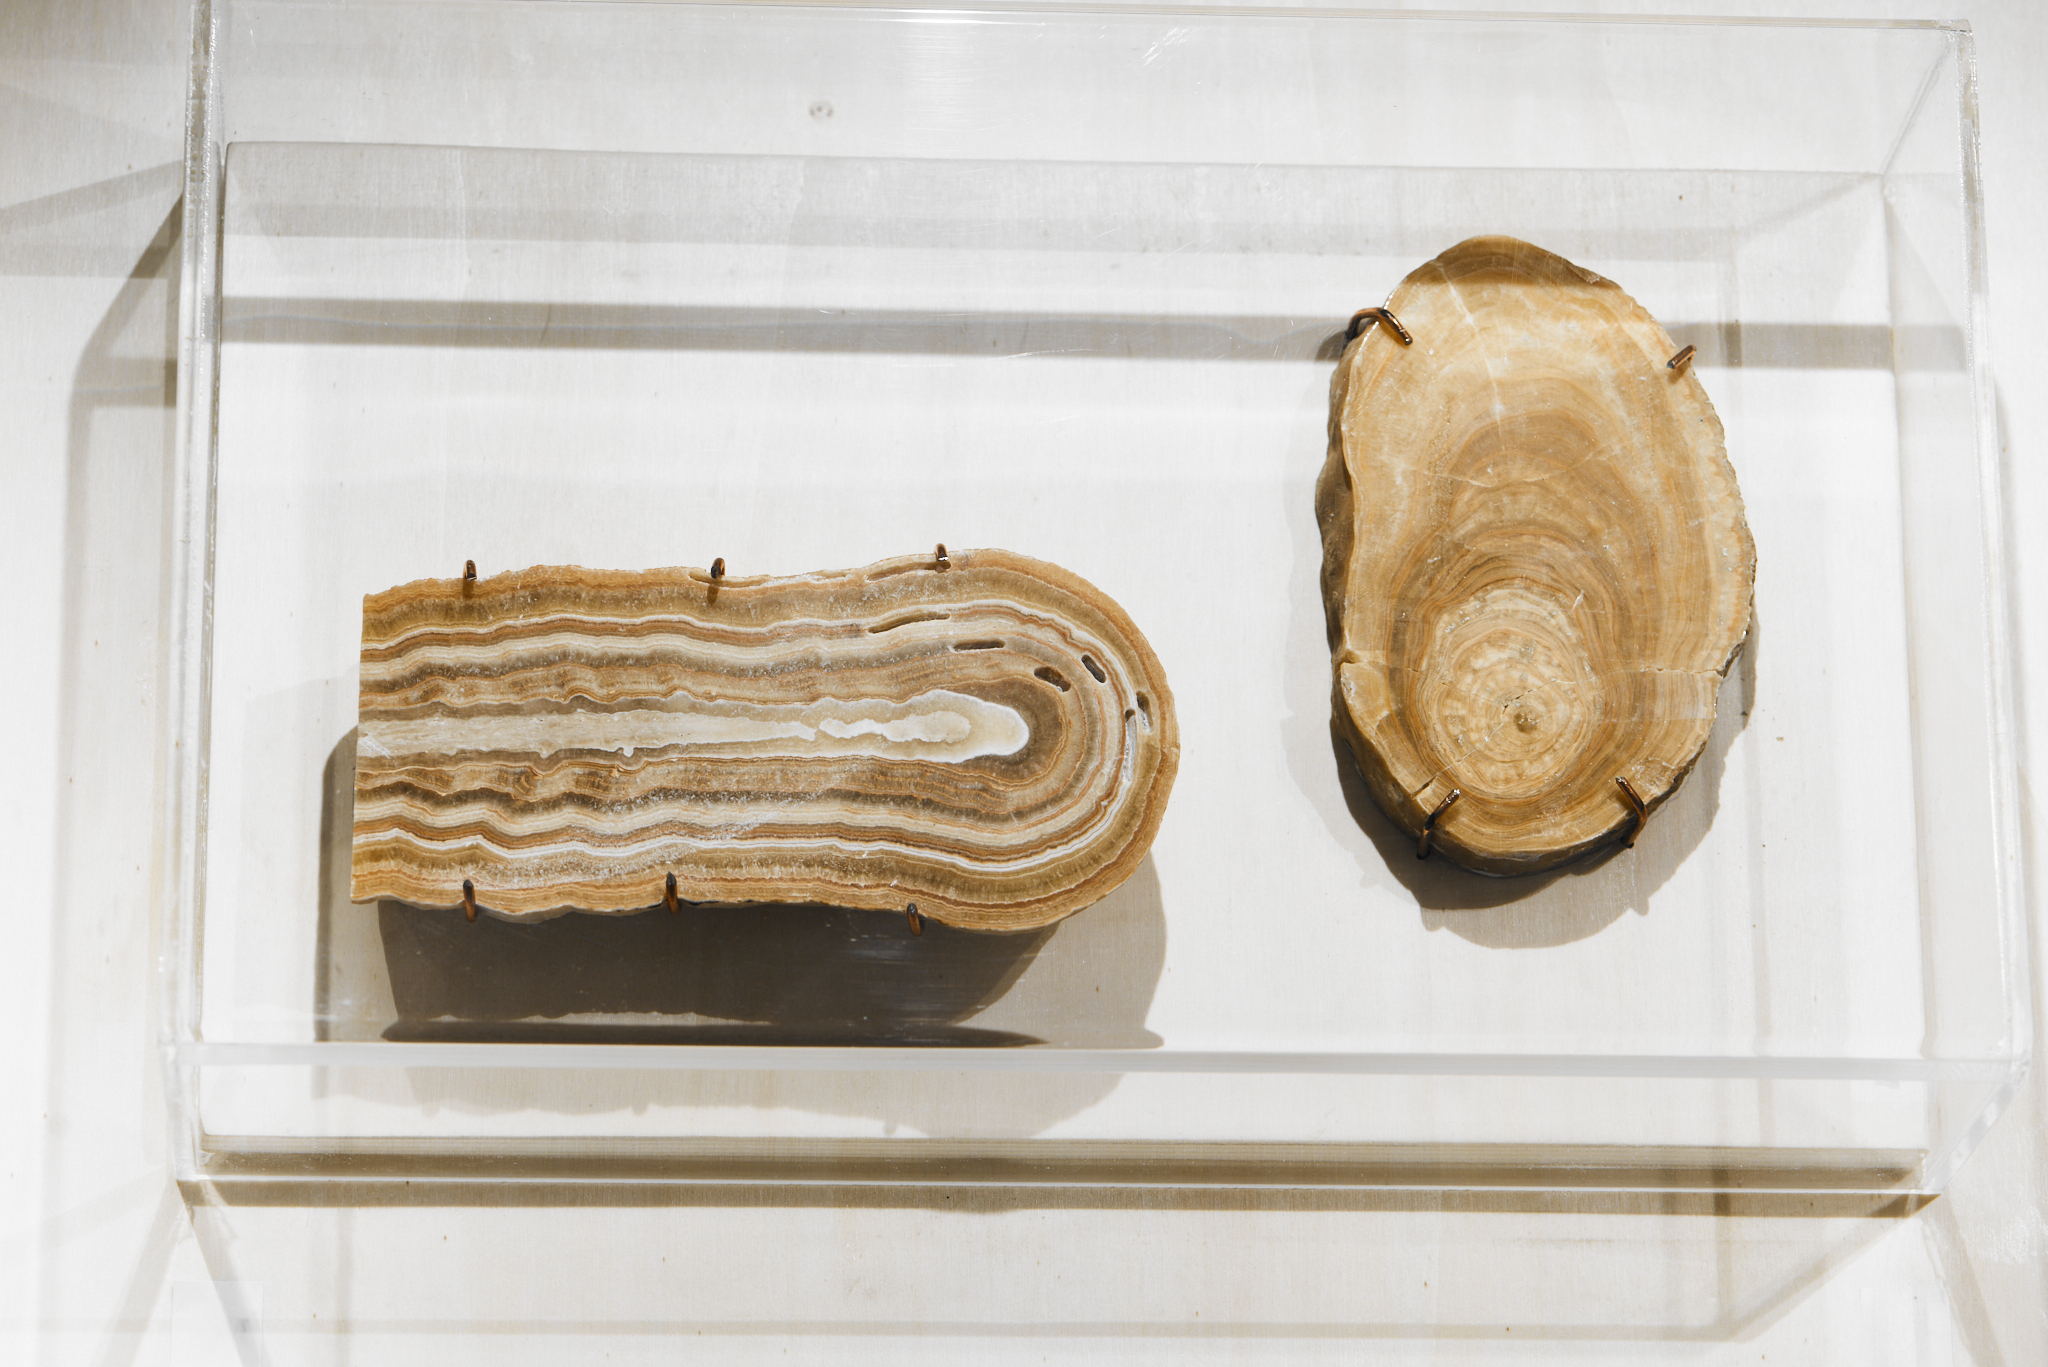 מימין – חתך של נטיף המתעד 20 אלף שנים, משמאל – חתך של נטיף שהחל לגדול לפני כ-250 אלף שנים